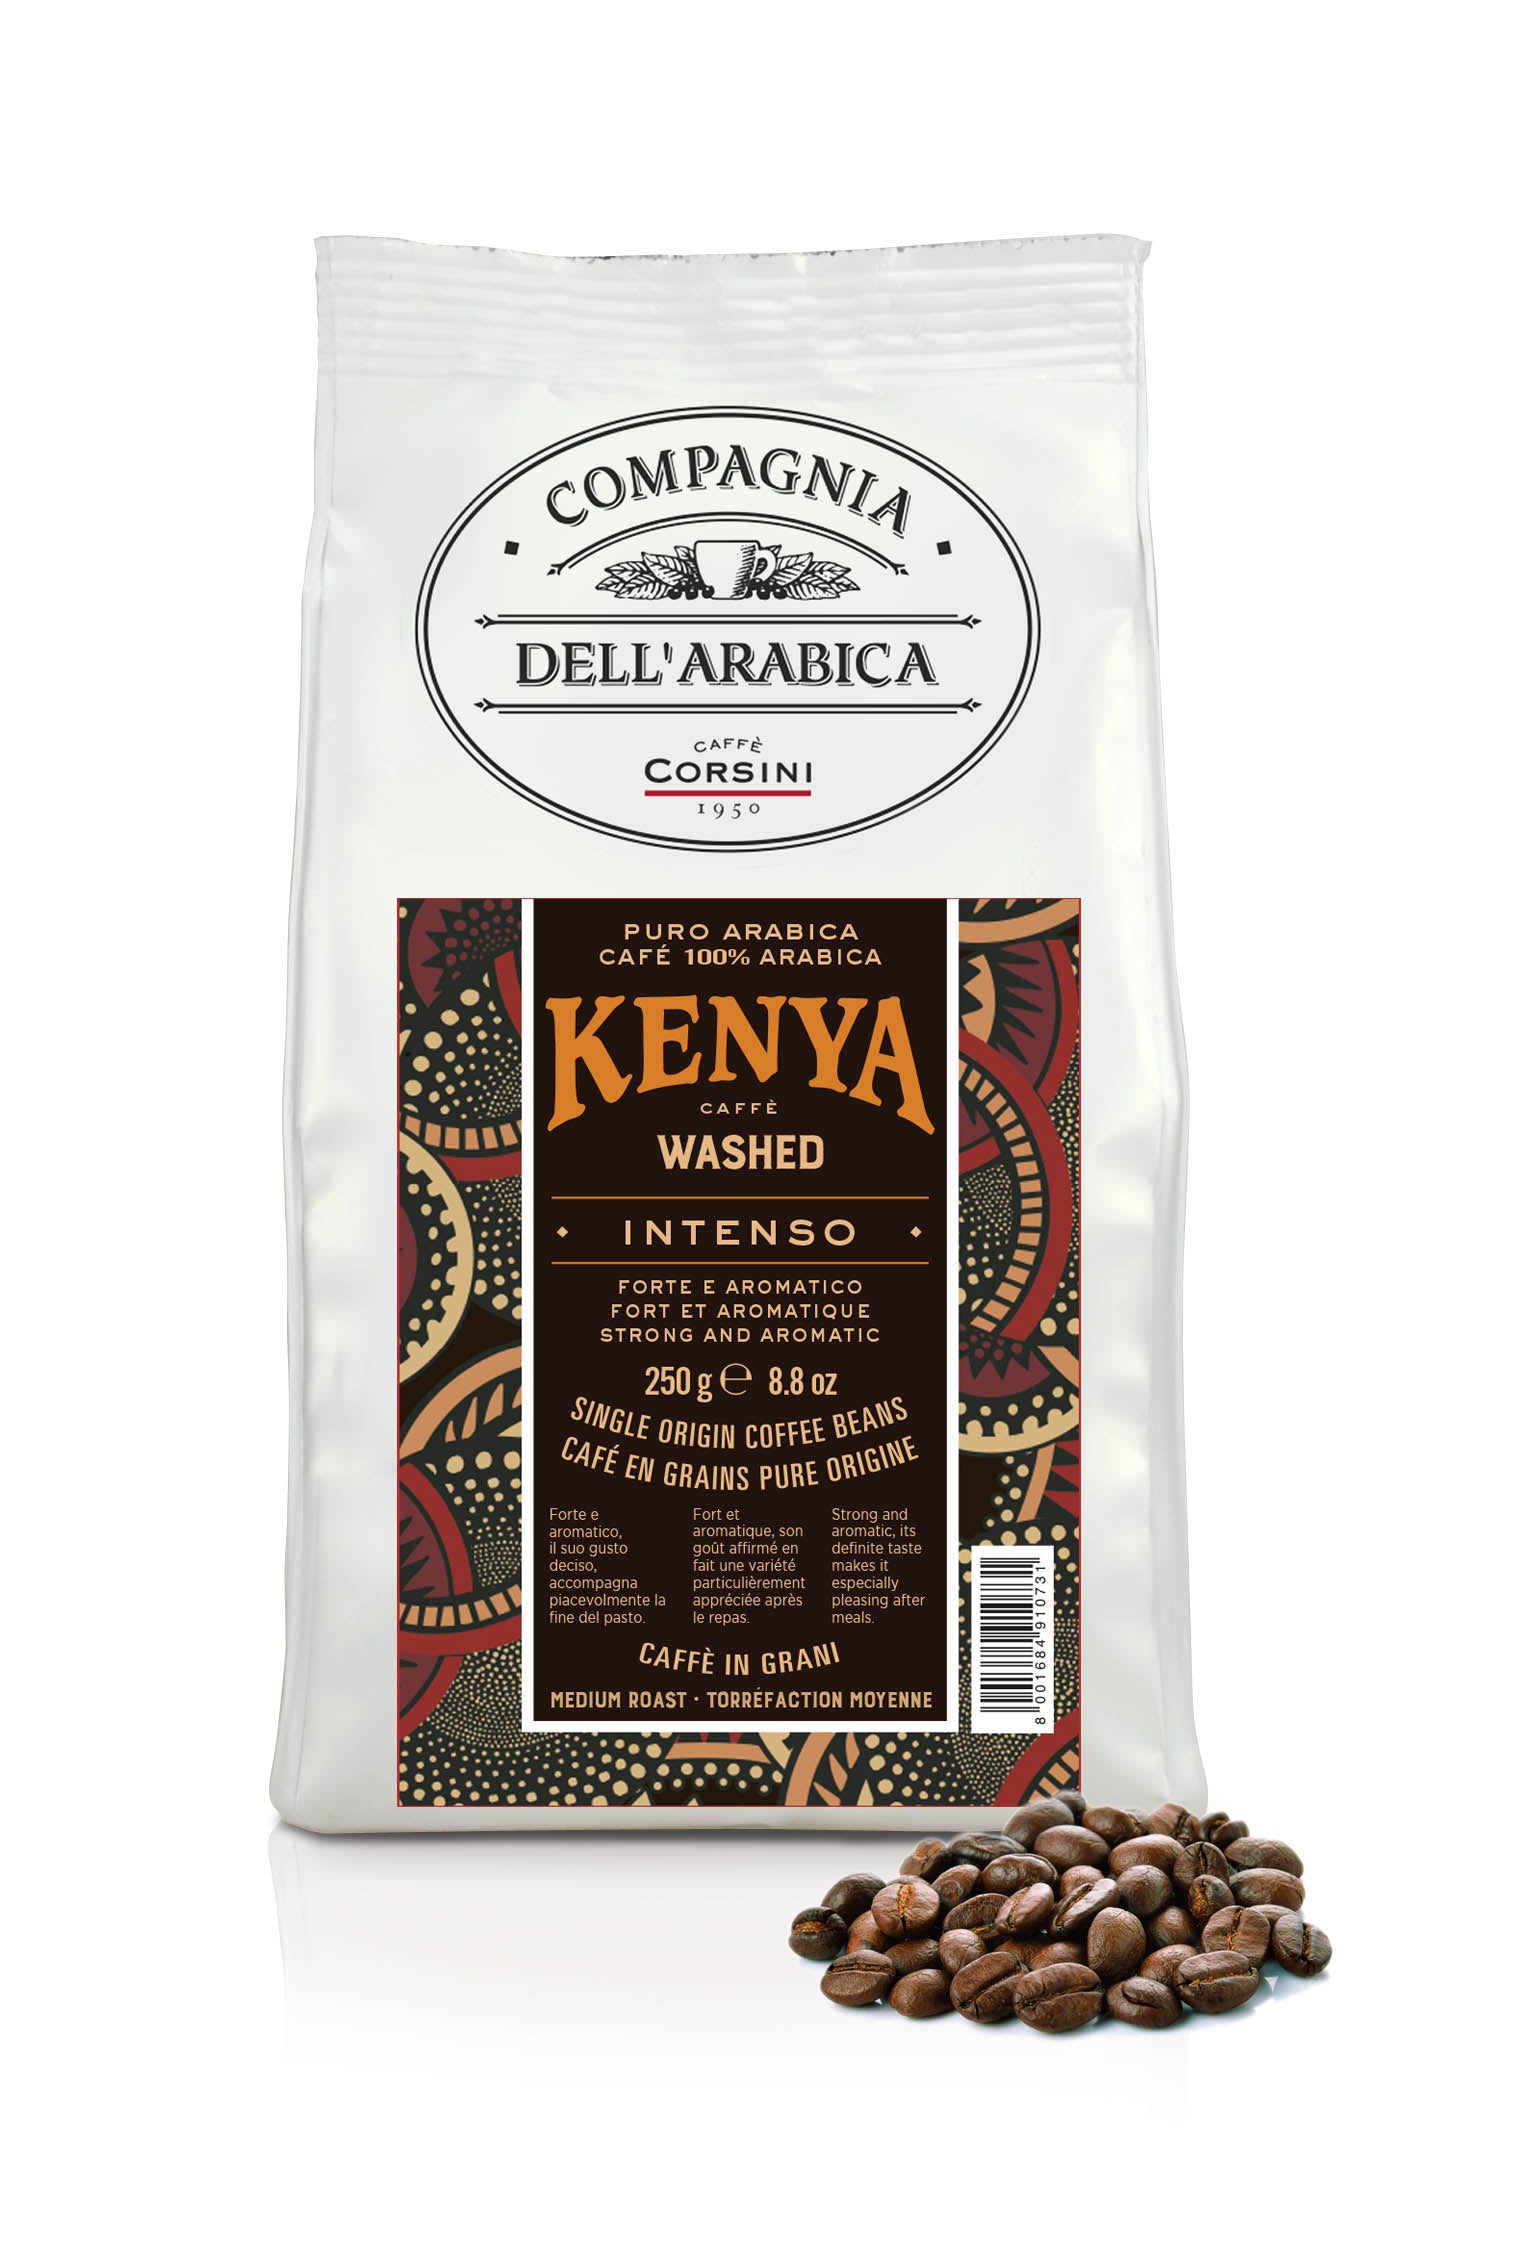 Caffè in grani | Kenya Washed | 100% Arabica | 250g